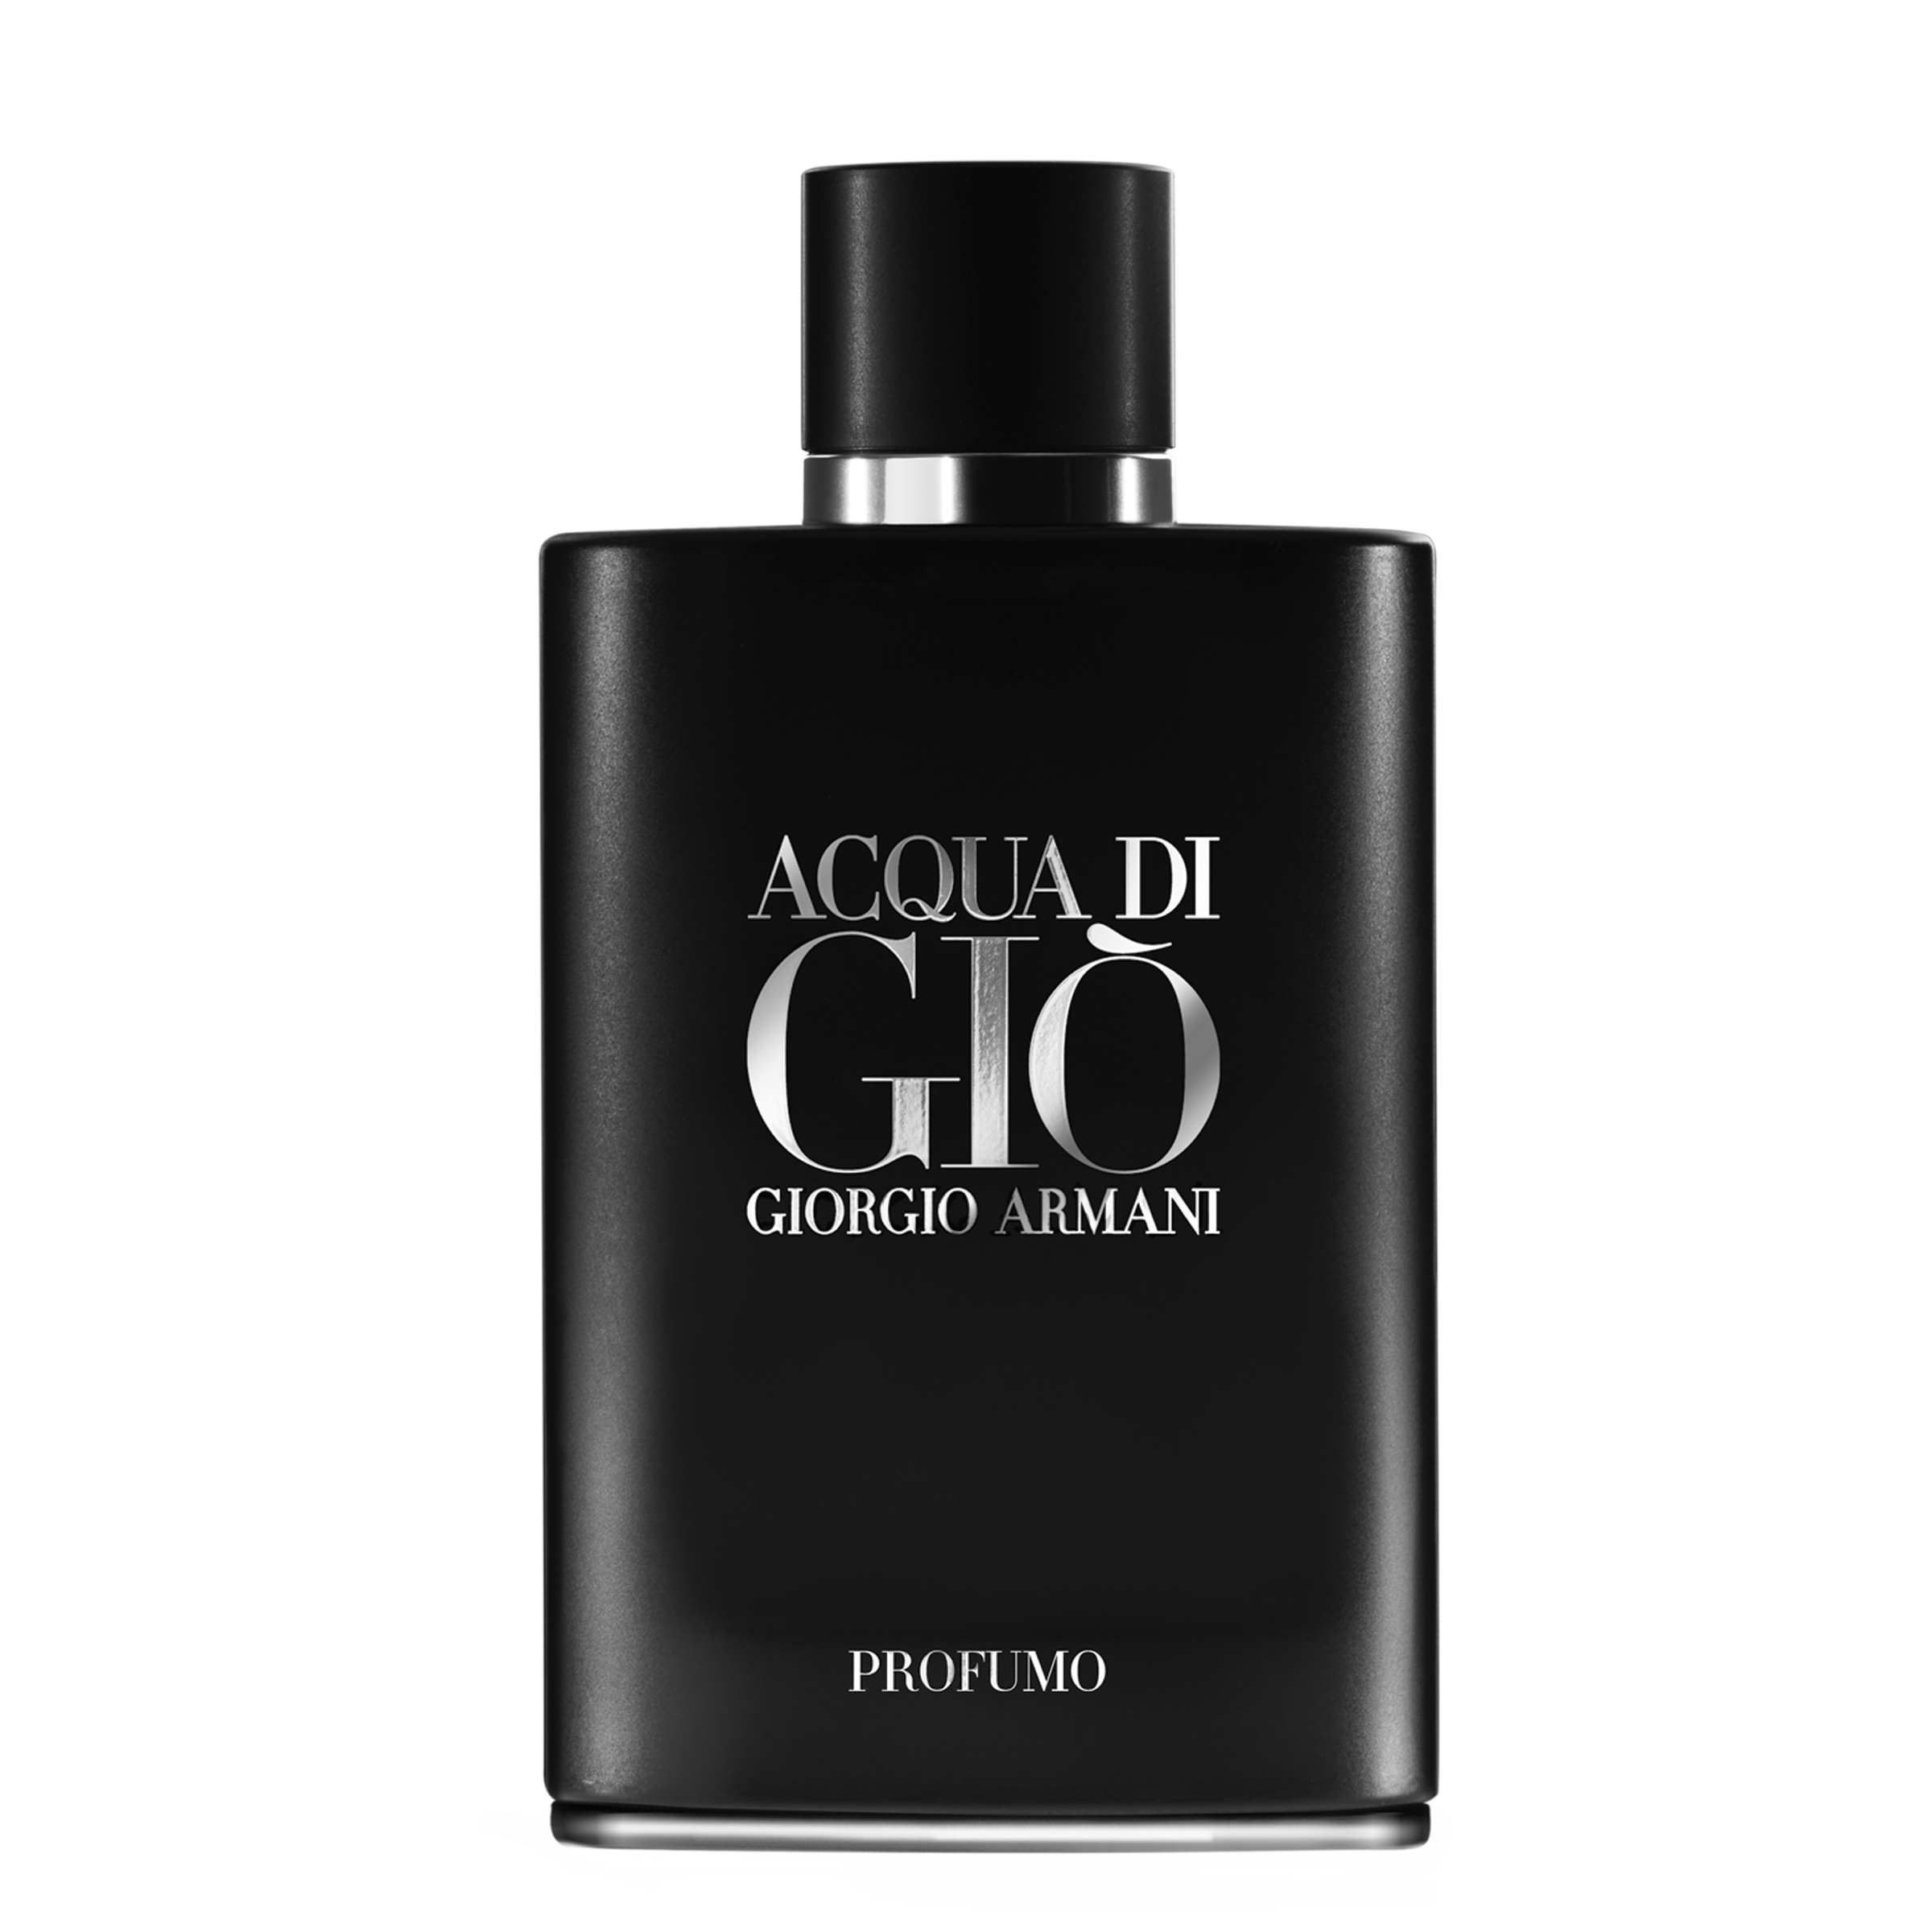 Perfume For Men | Acqua Di Giò Profumo 